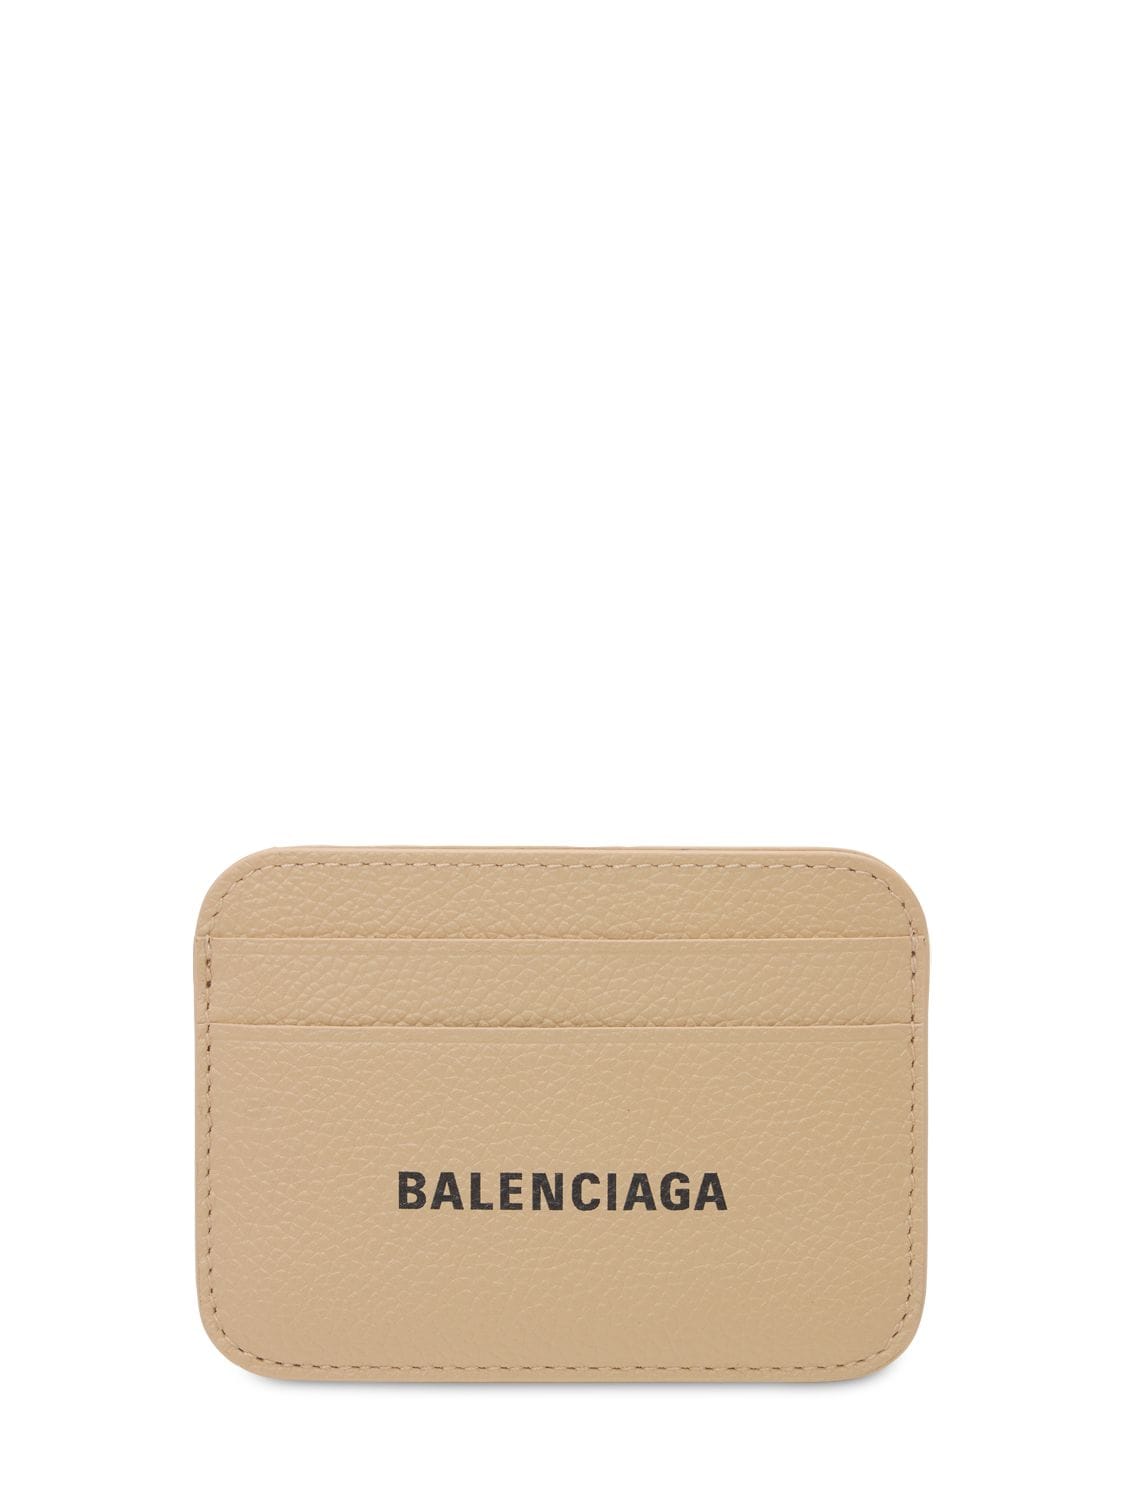 BALENCIAGA 皮革卡包,73IWD2051-MJC2MA2